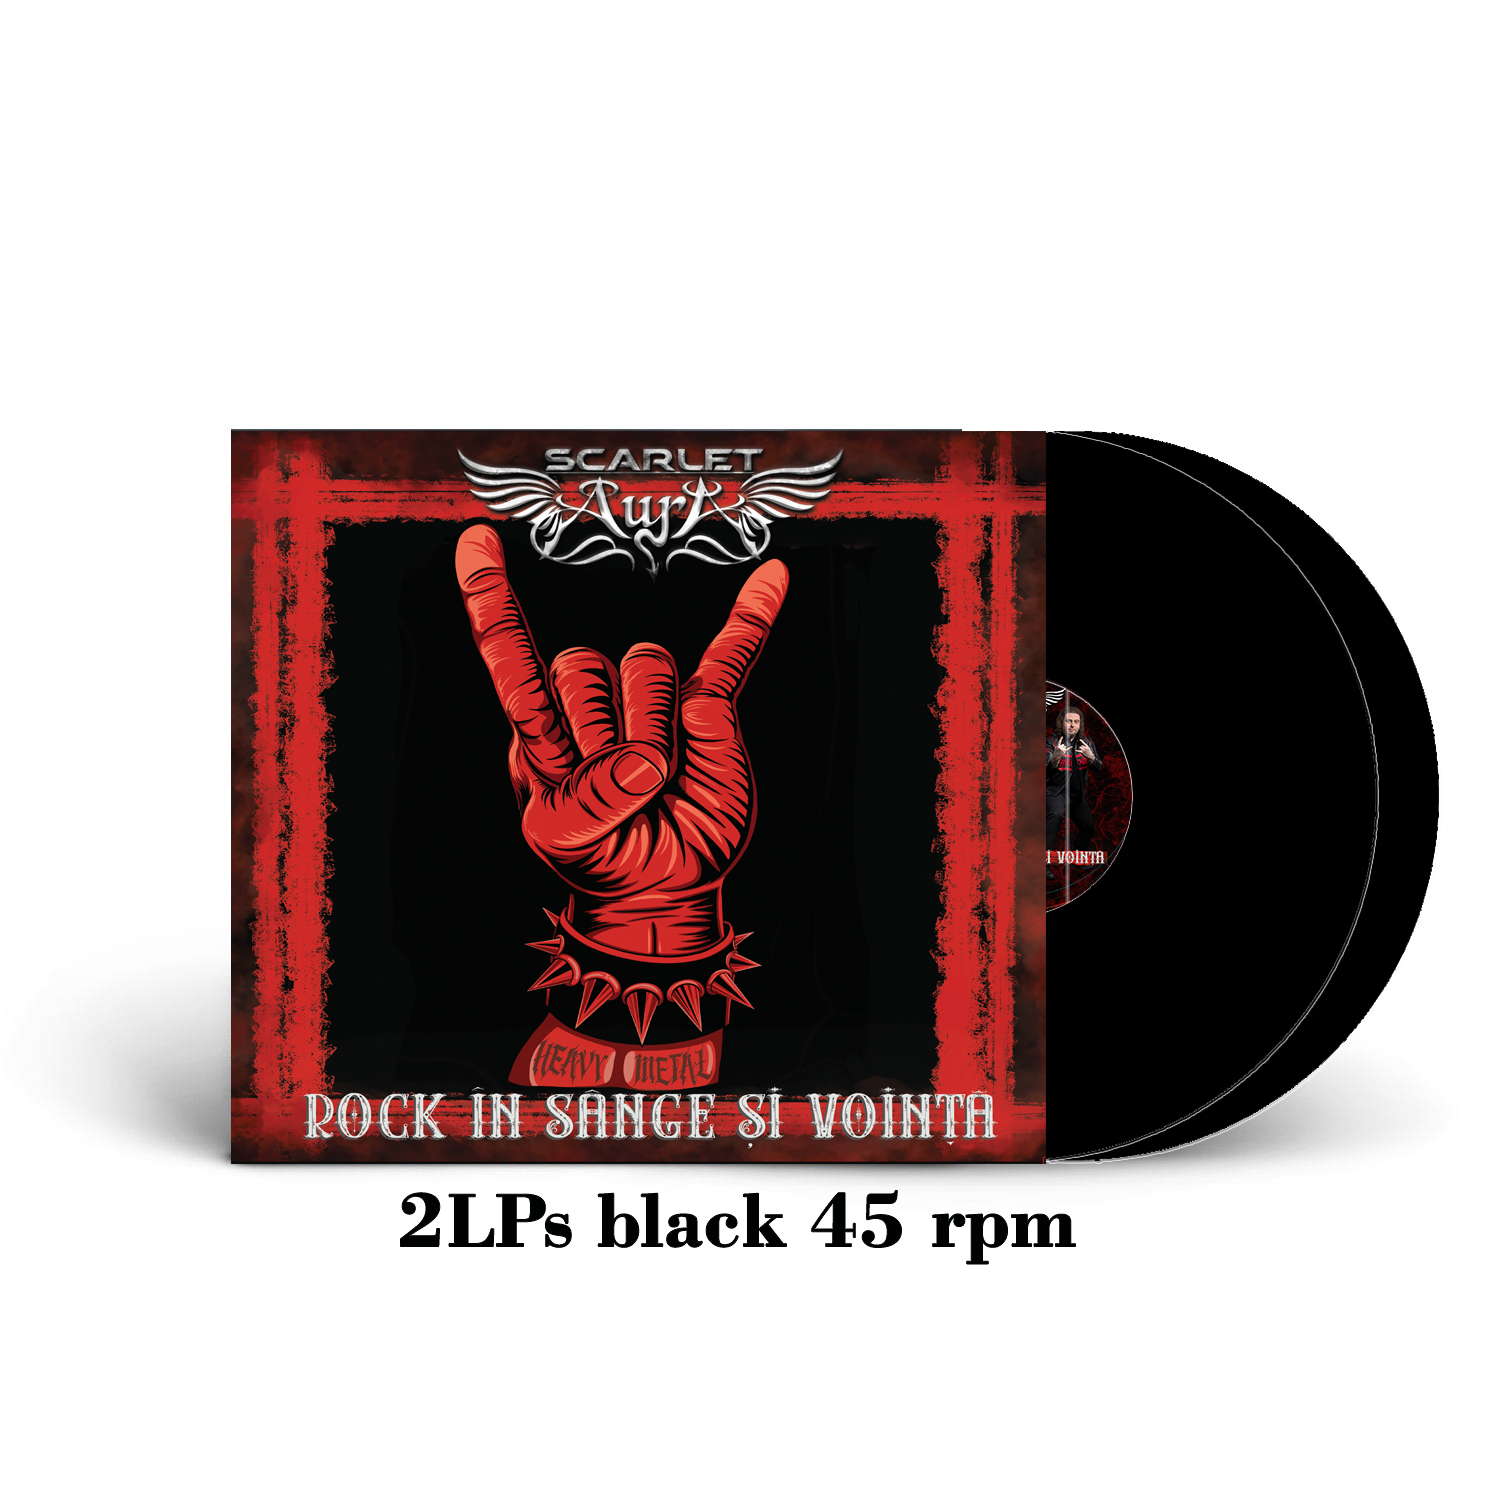 Rock in Sange si Vointa 2LP black 45 rpm Scarlet Aura